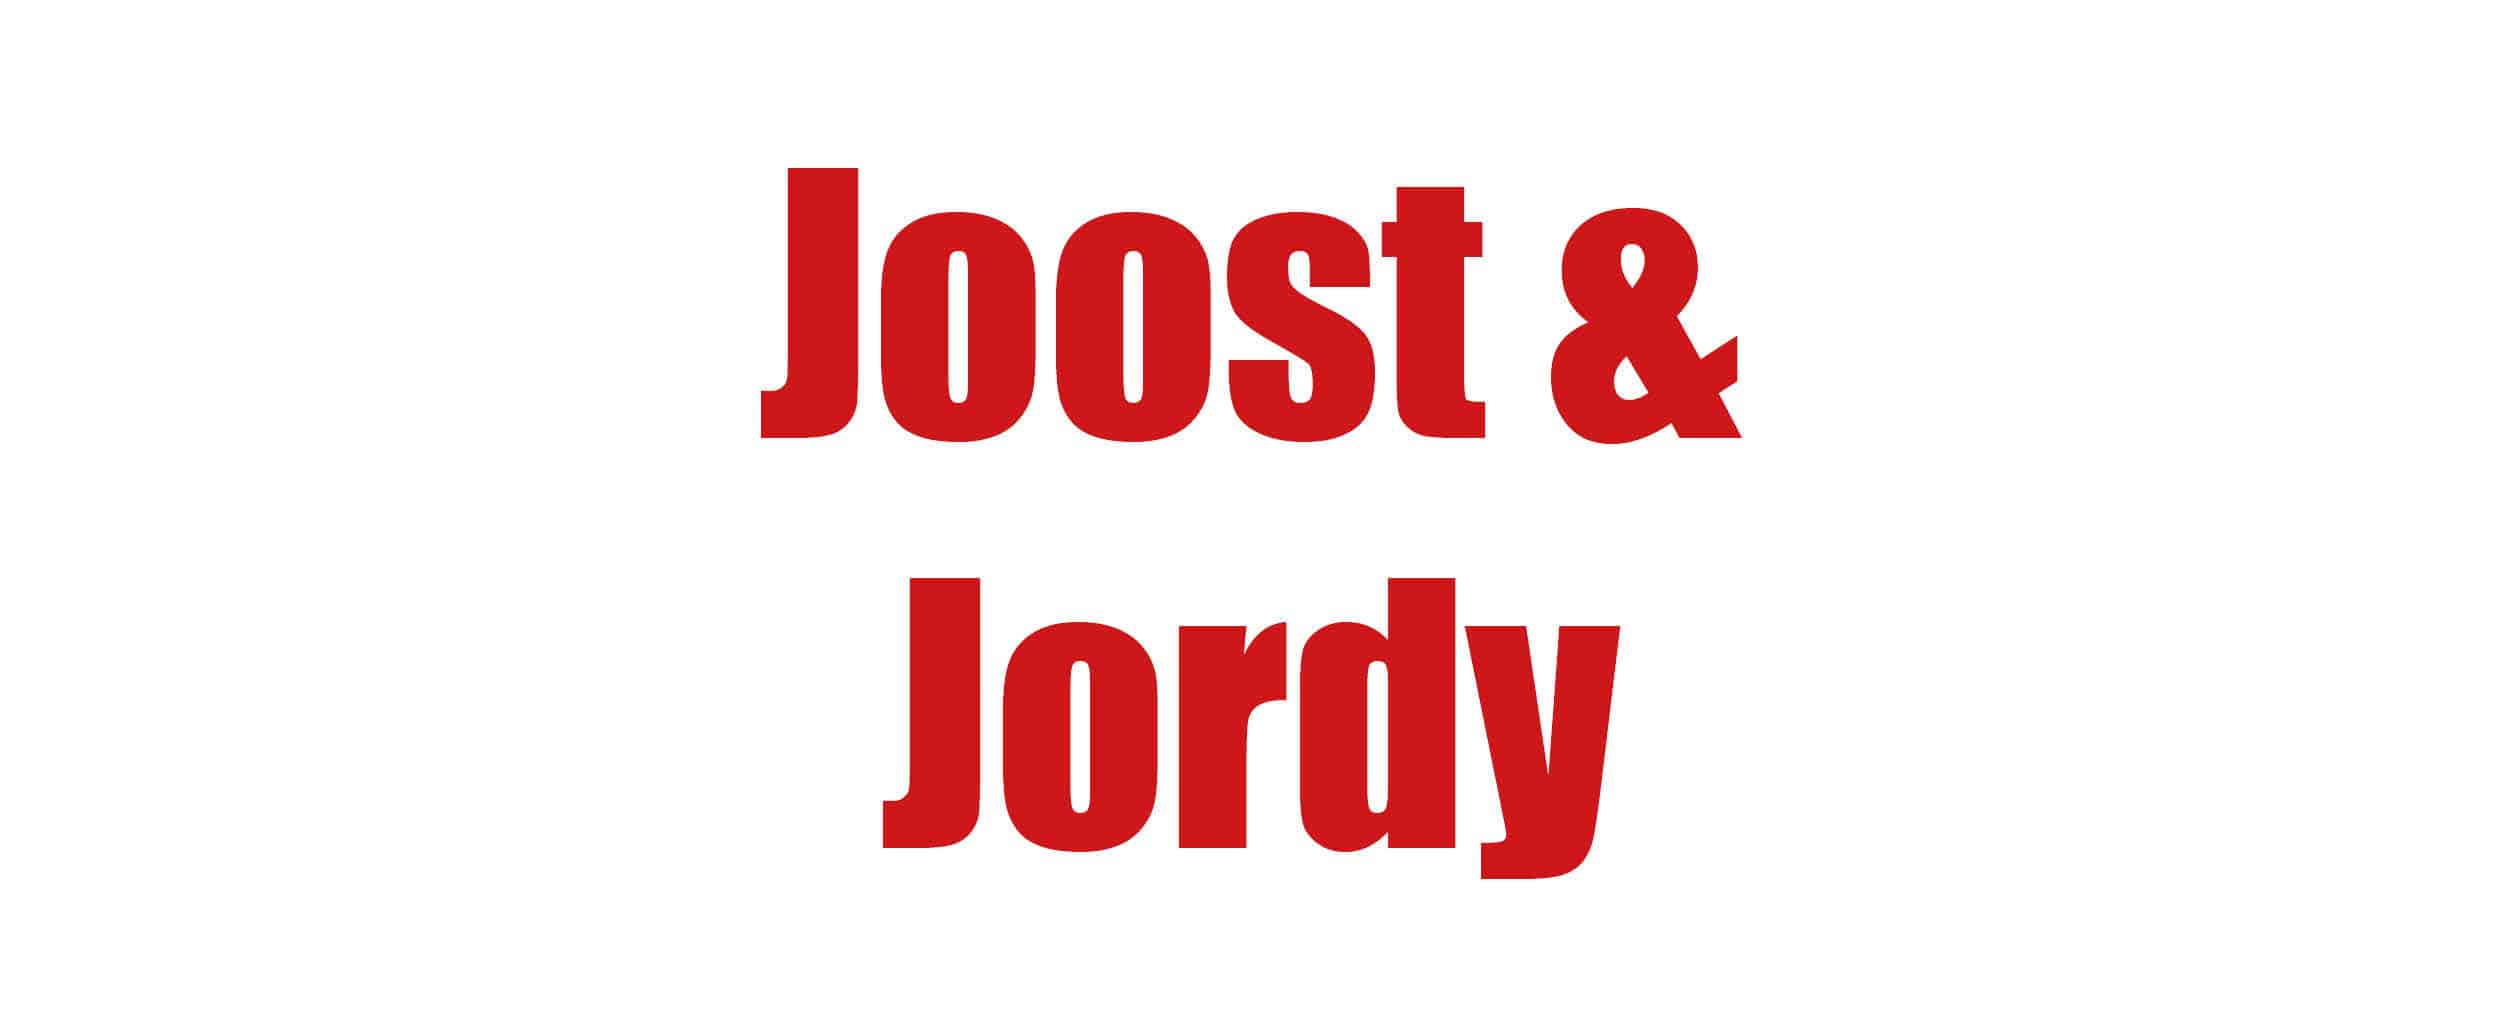 JOOST_JORDY